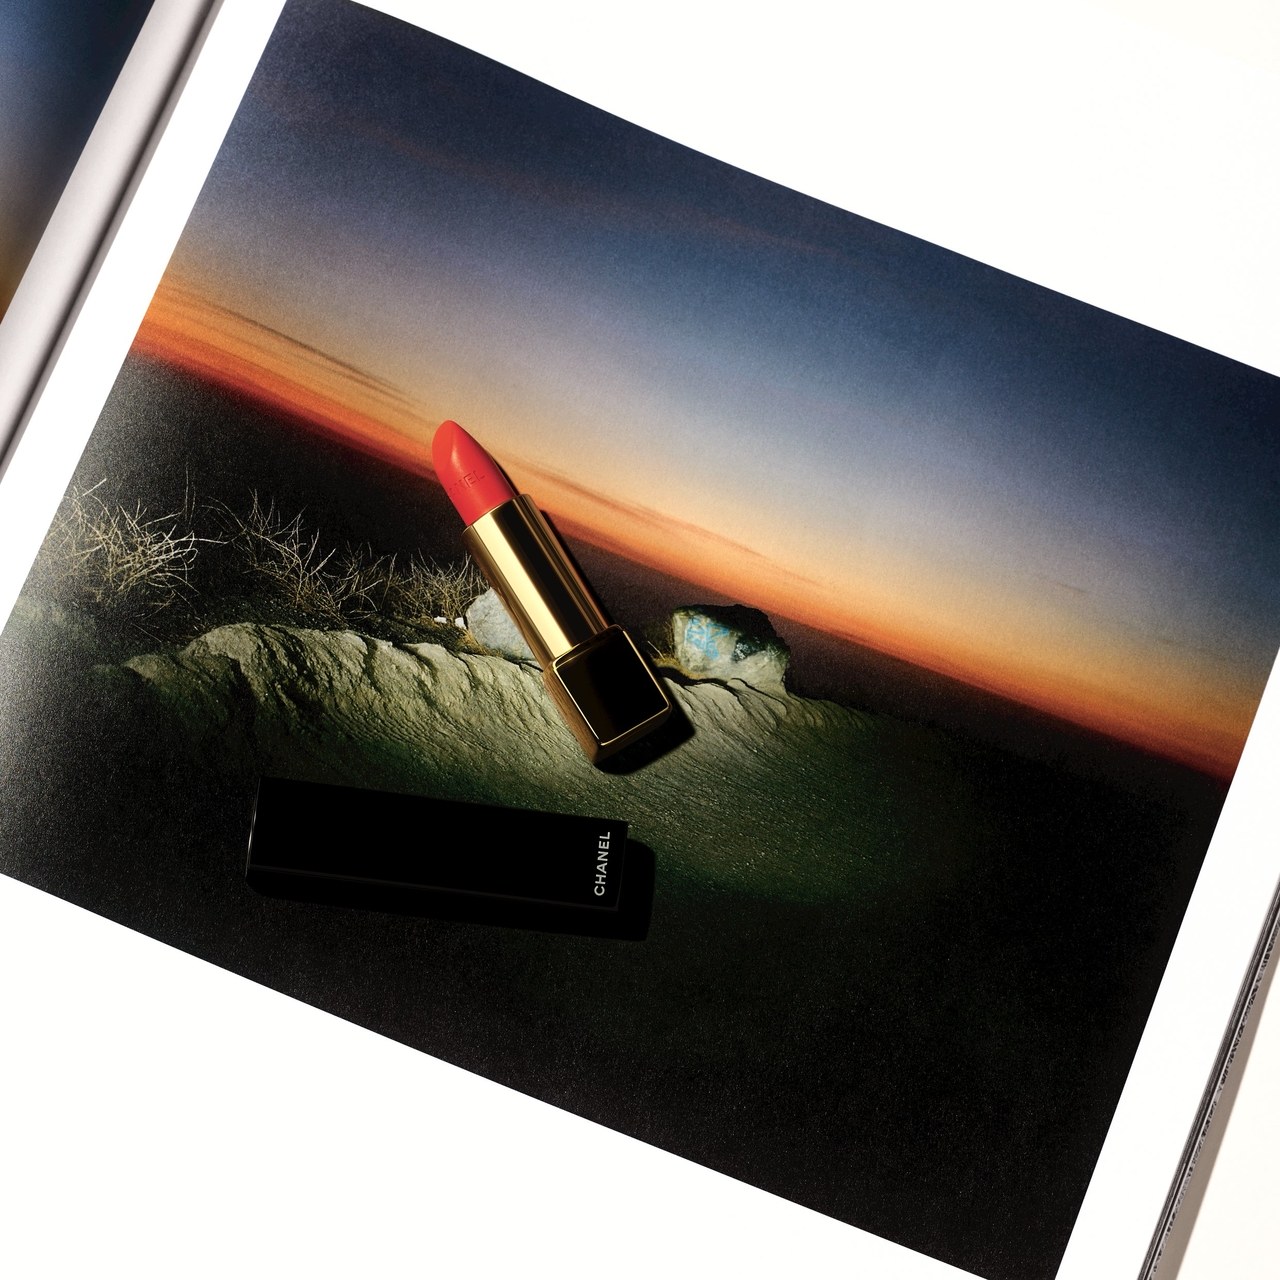 شانيل's First Light Lipstick & Max Farago's Photo of A Sunrise from His West Coast Road Trip with Lucia Pia.